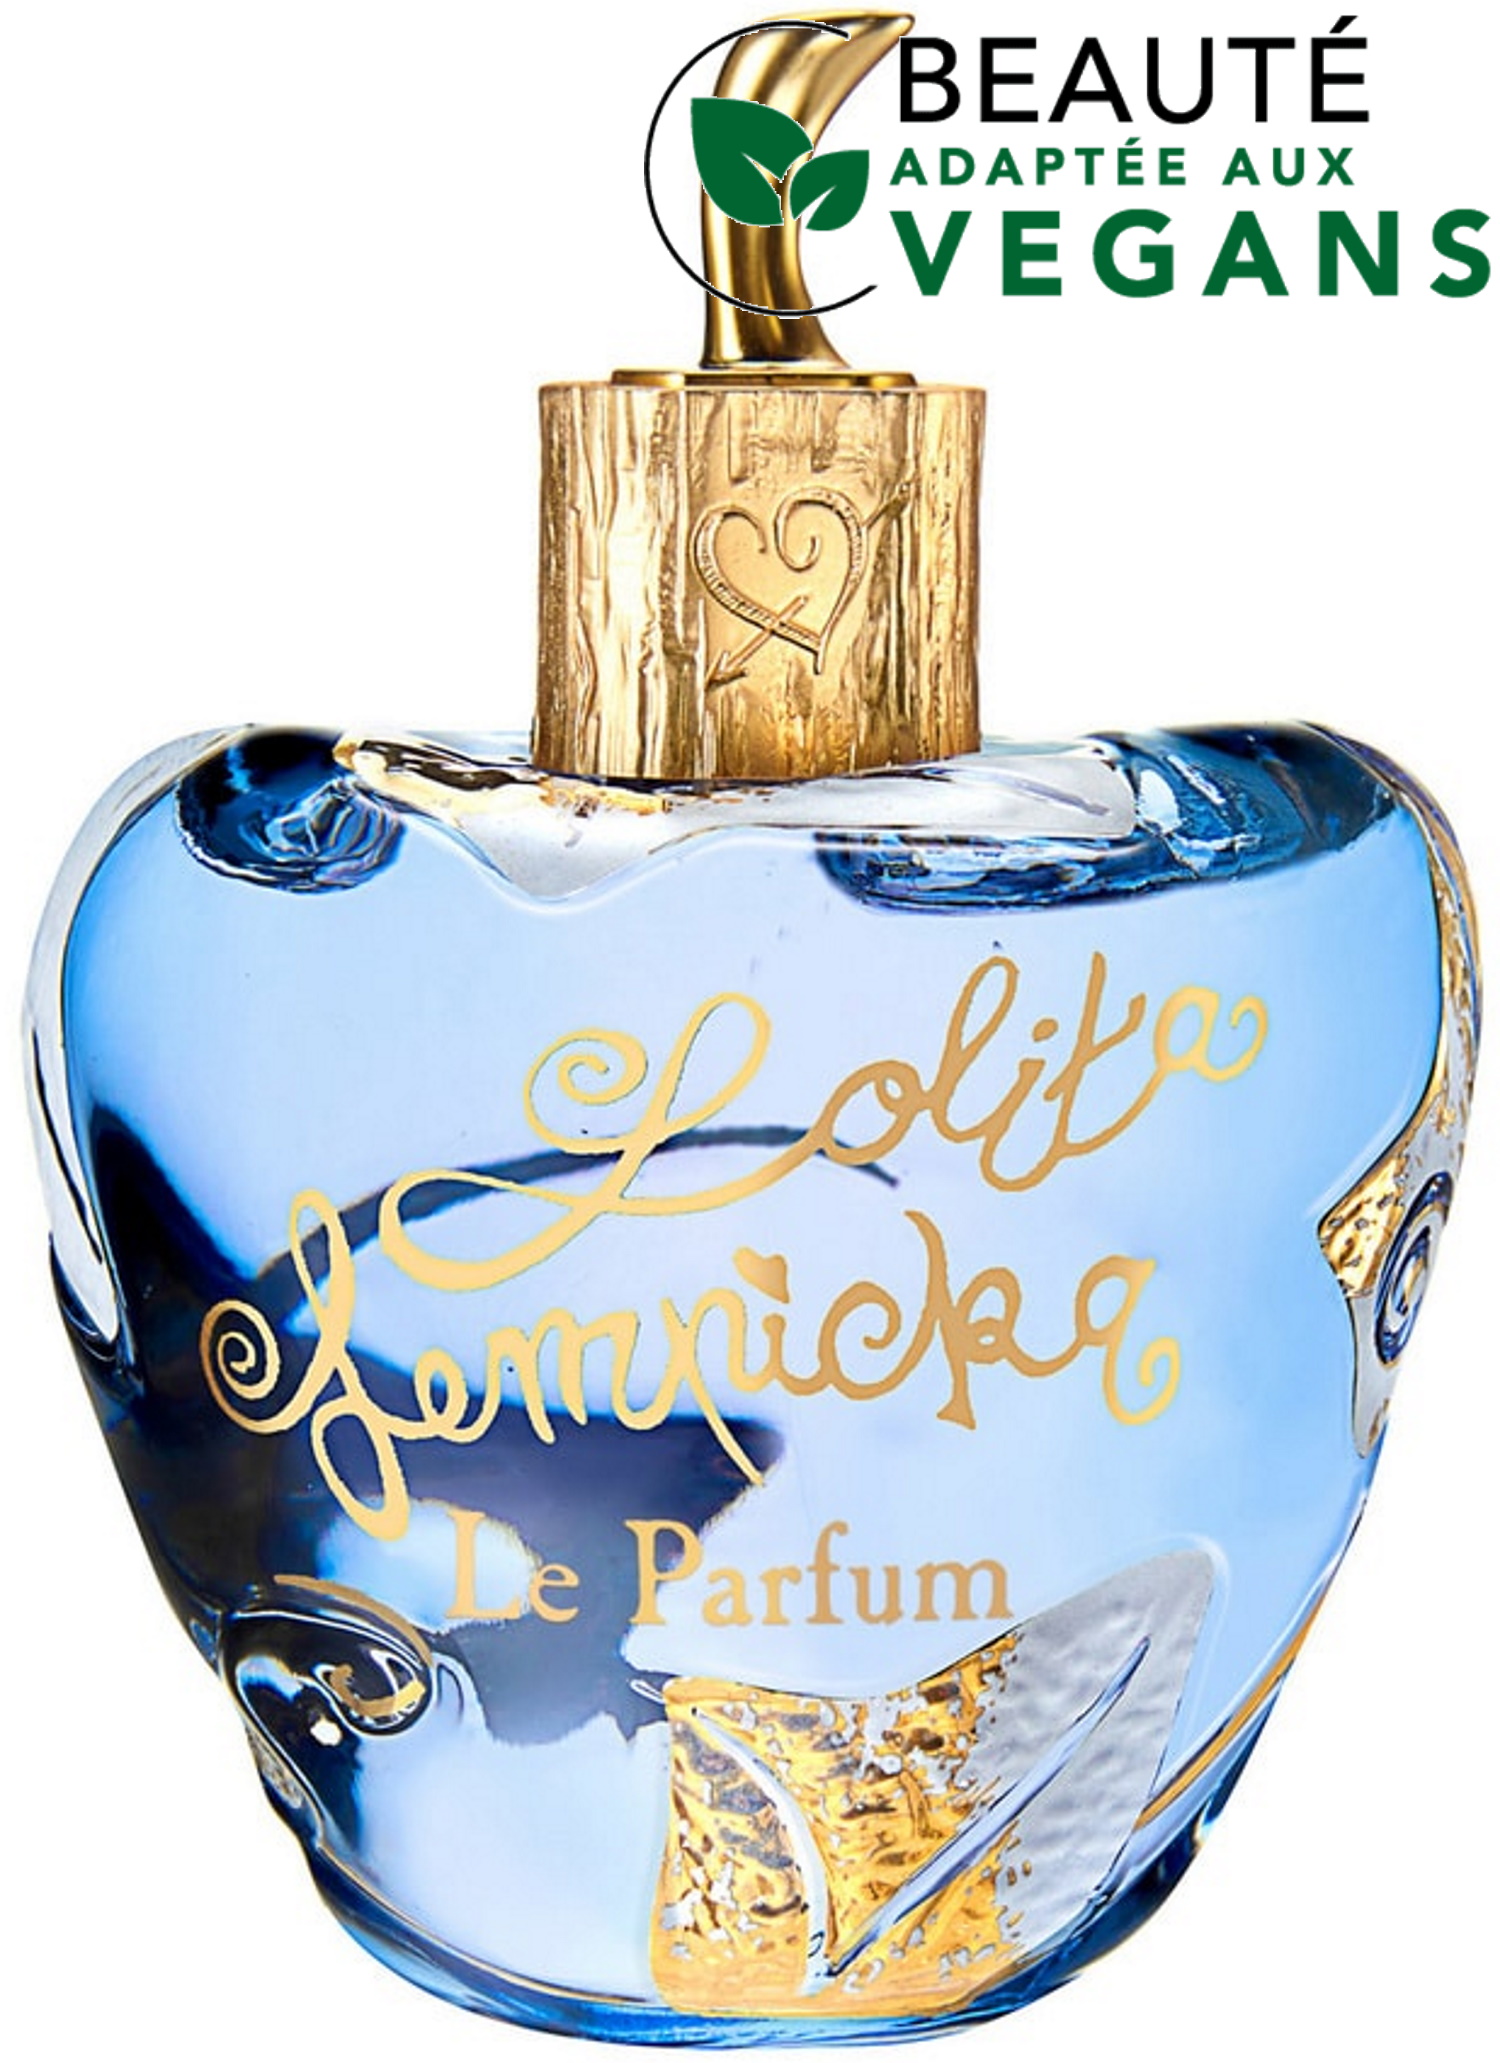 LOLITA LEMPICKA - Le Parfum : parfum éco-responsables, végans et engagés